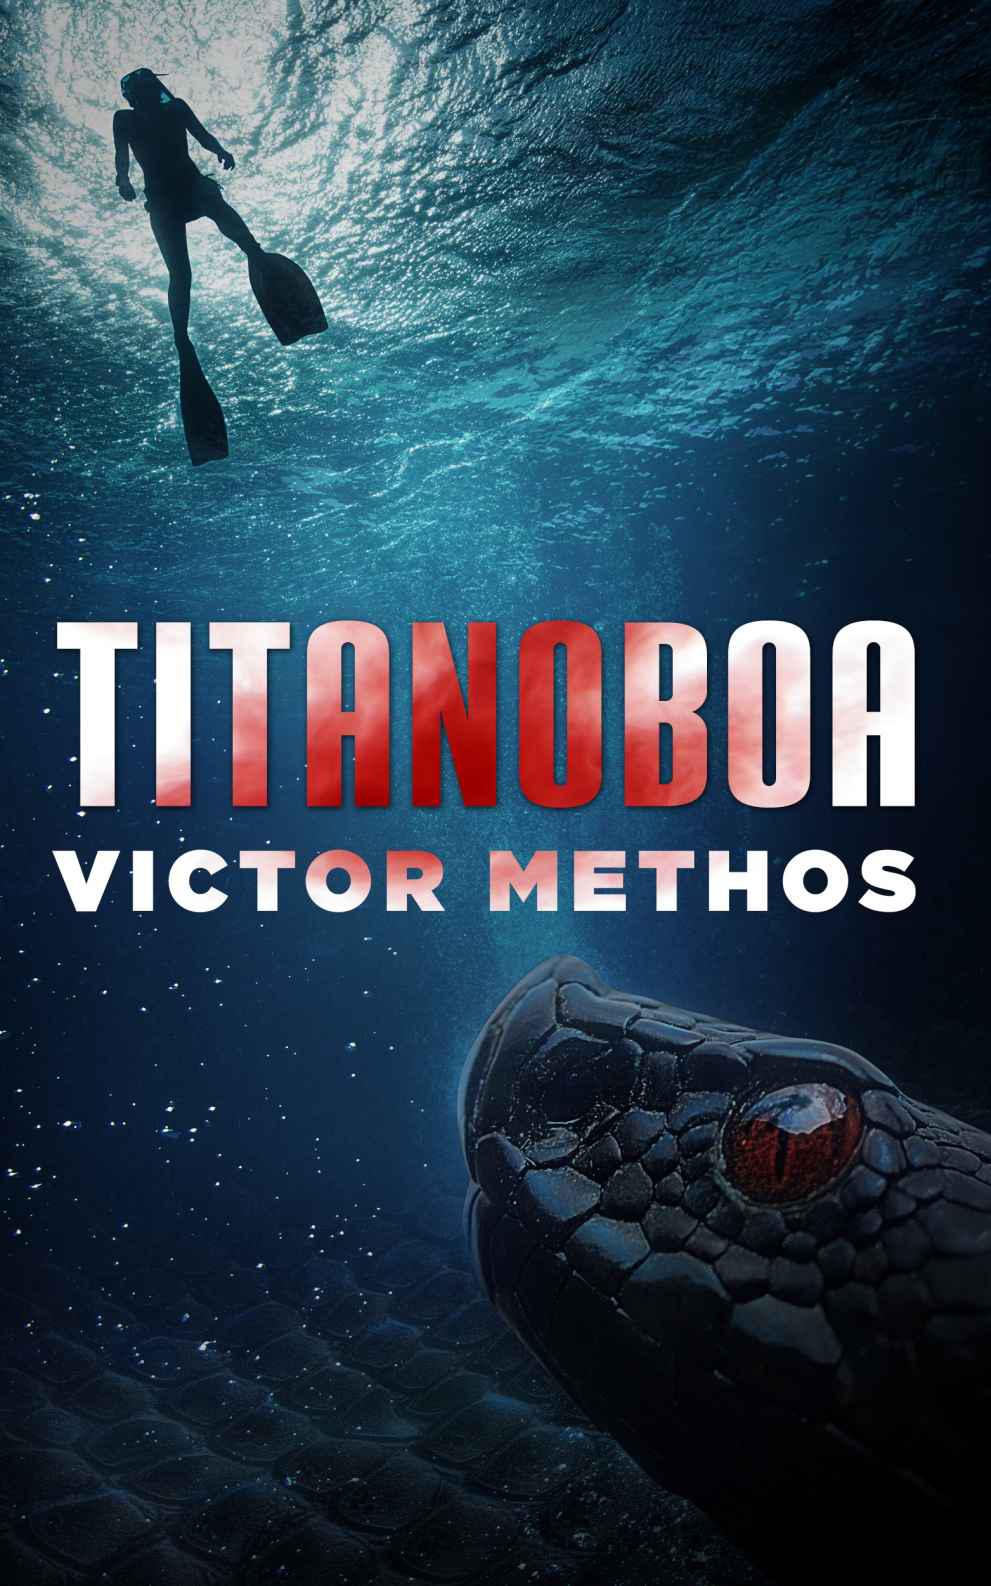 Titanoboa by Victor Methos